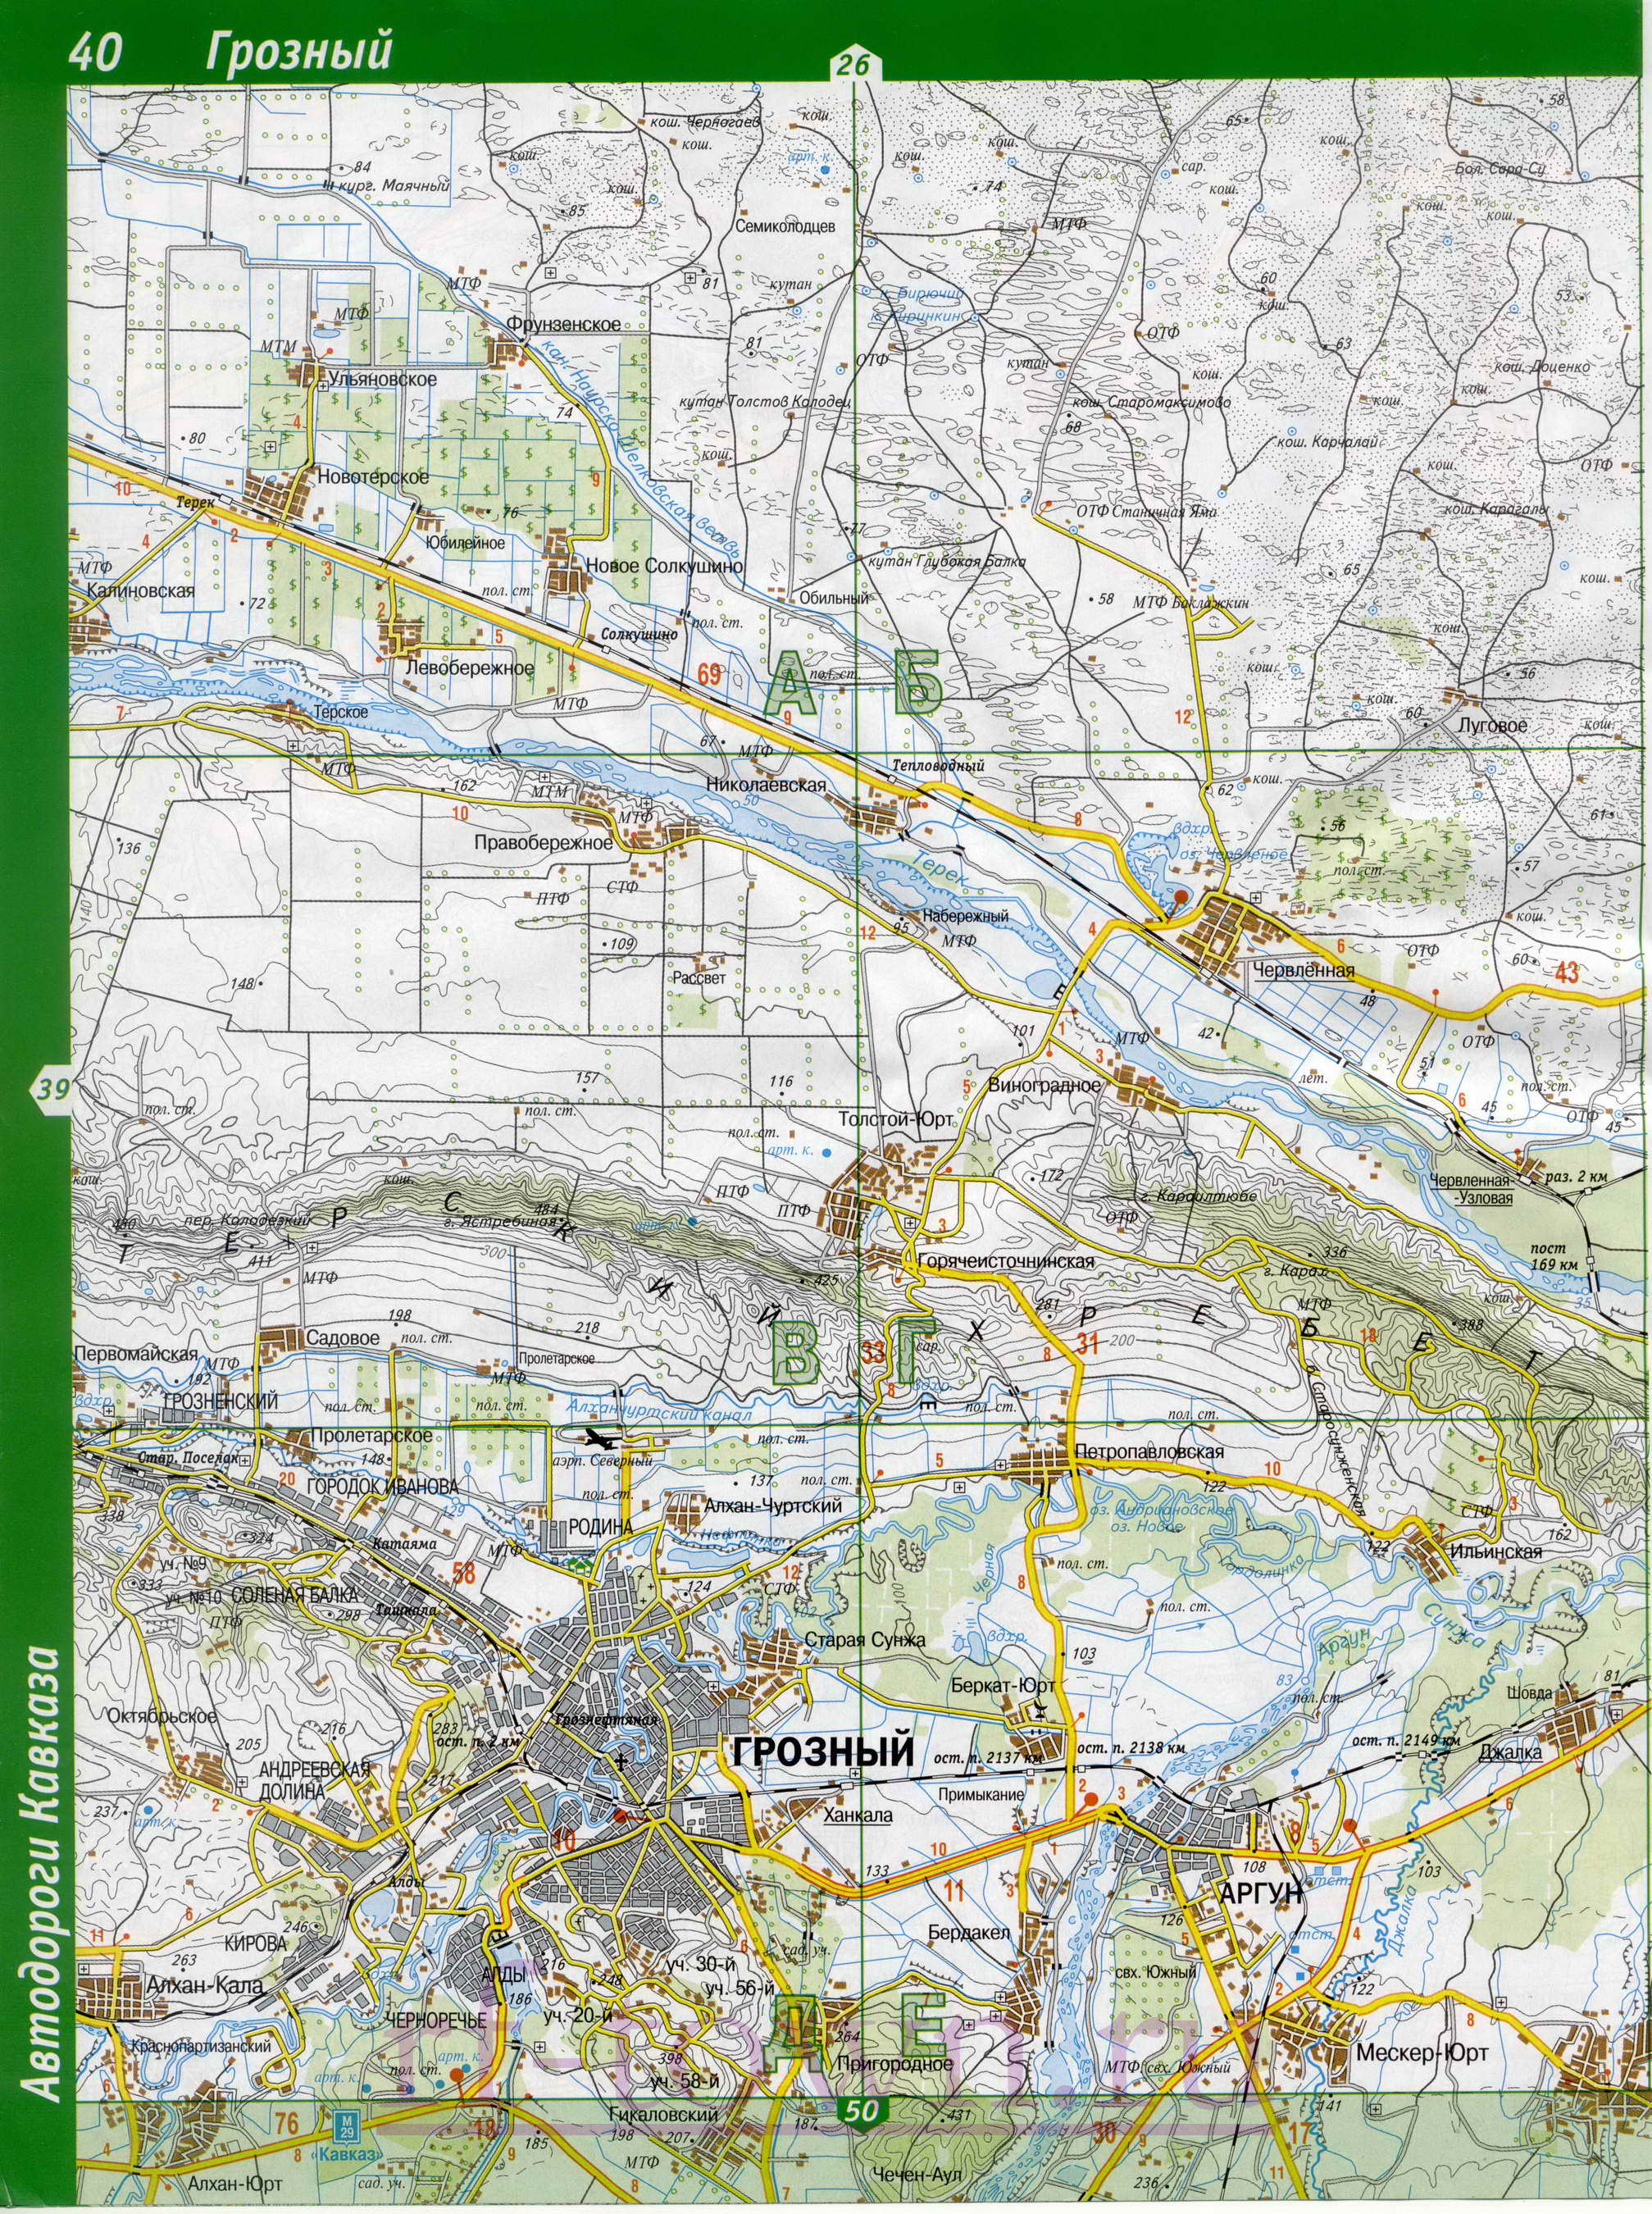 Карта Чечни. Топографическая карта Чечни. Подробная карта Чечни масштаба 1см:2км, B1 - 